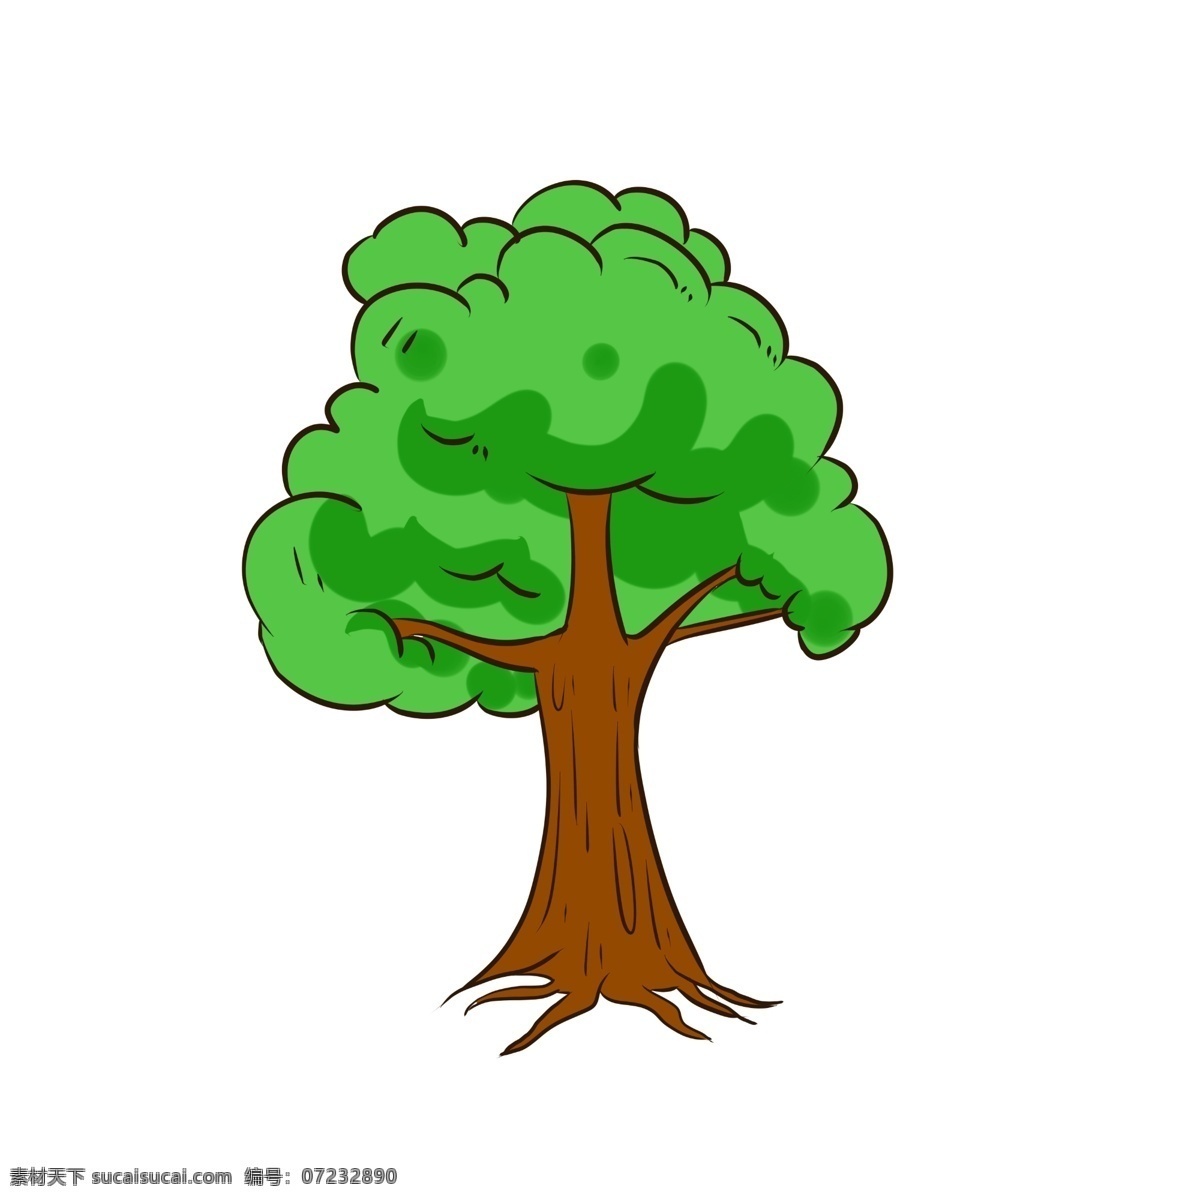 茂密 叶子 景观 绿色植物 树木 生长 元素 树叶 秋天 秋叶 圆形小树木 大自然 森林 树 绿色植被 植被 手绘 卡通